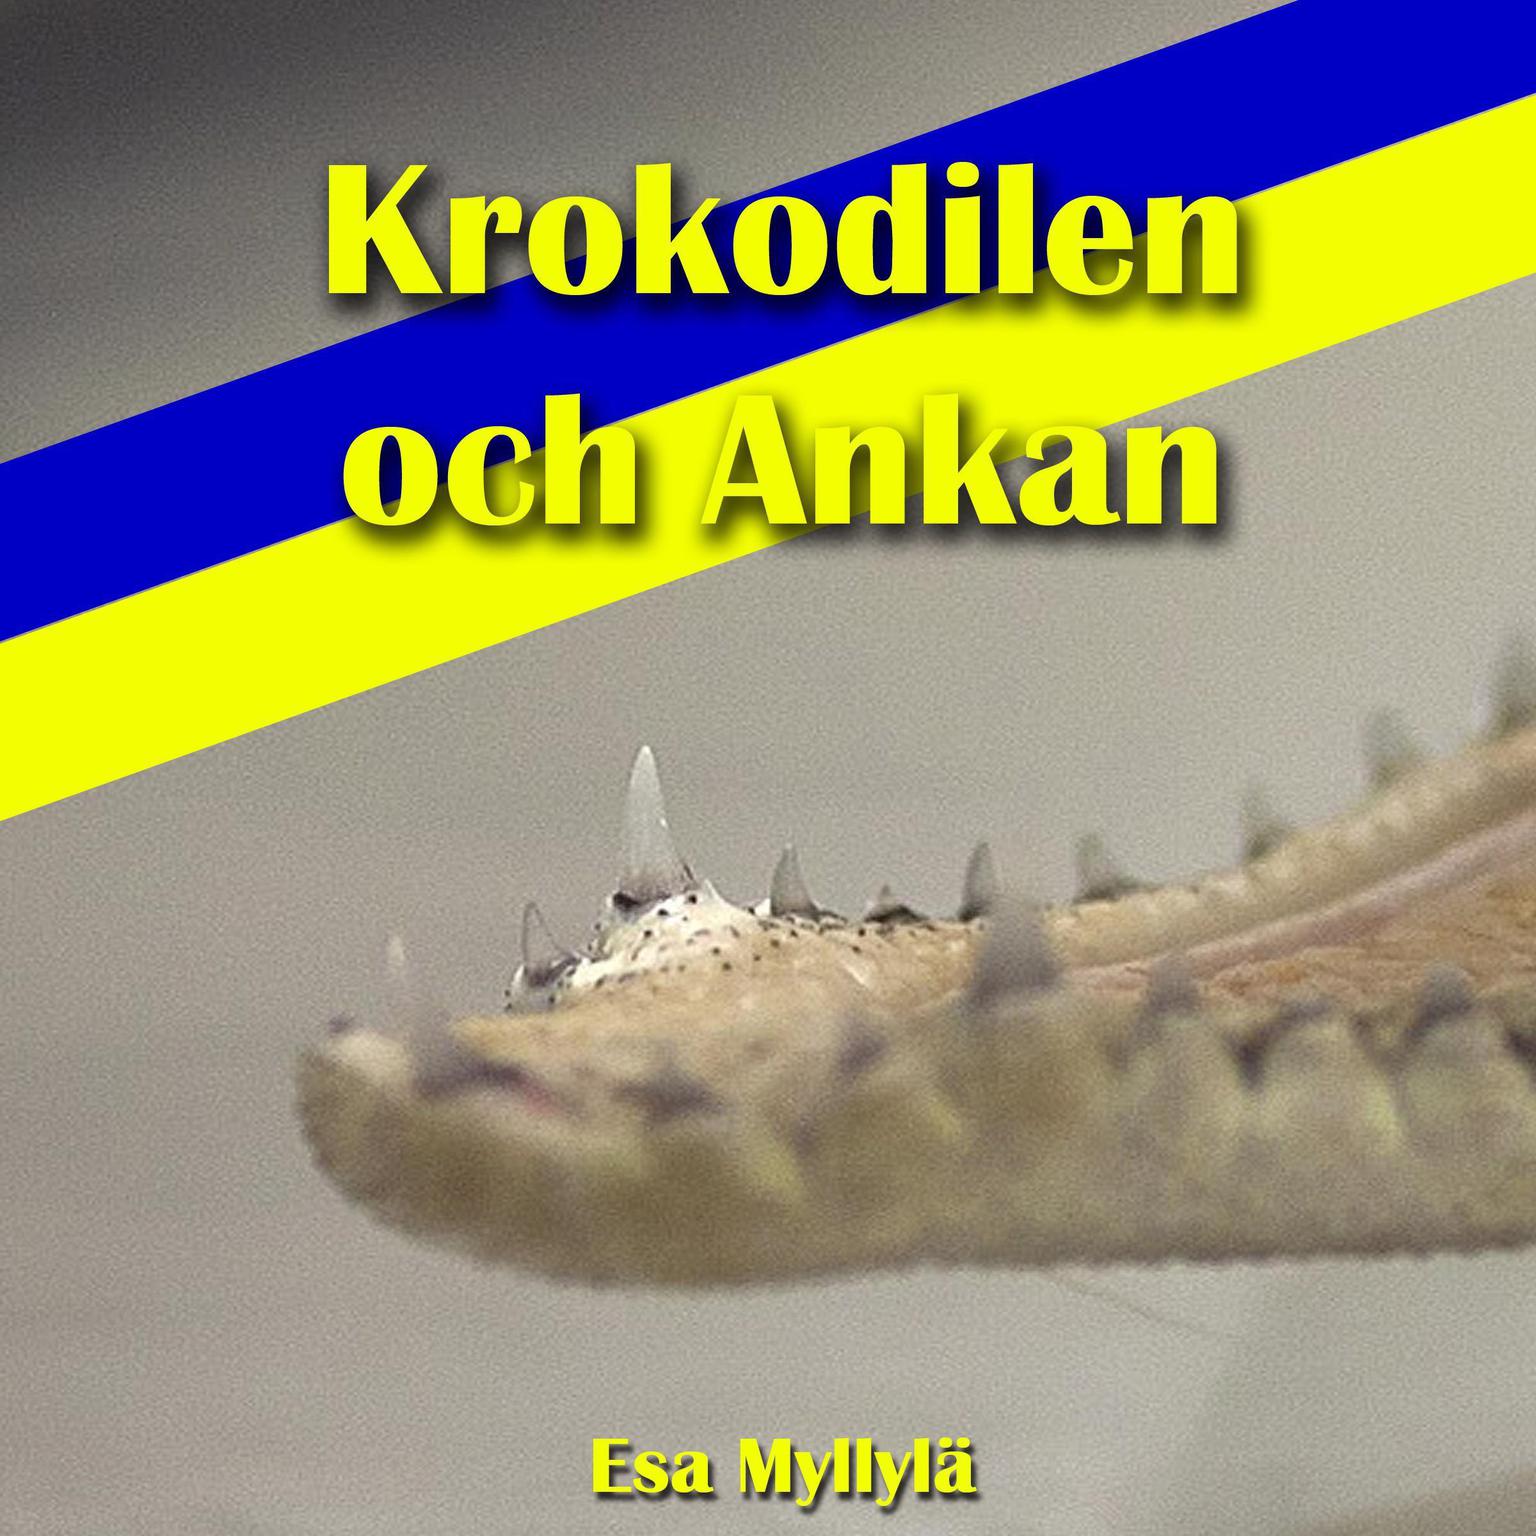 Krokodilen Och Ankan Audiobook, by Esa Myllylä